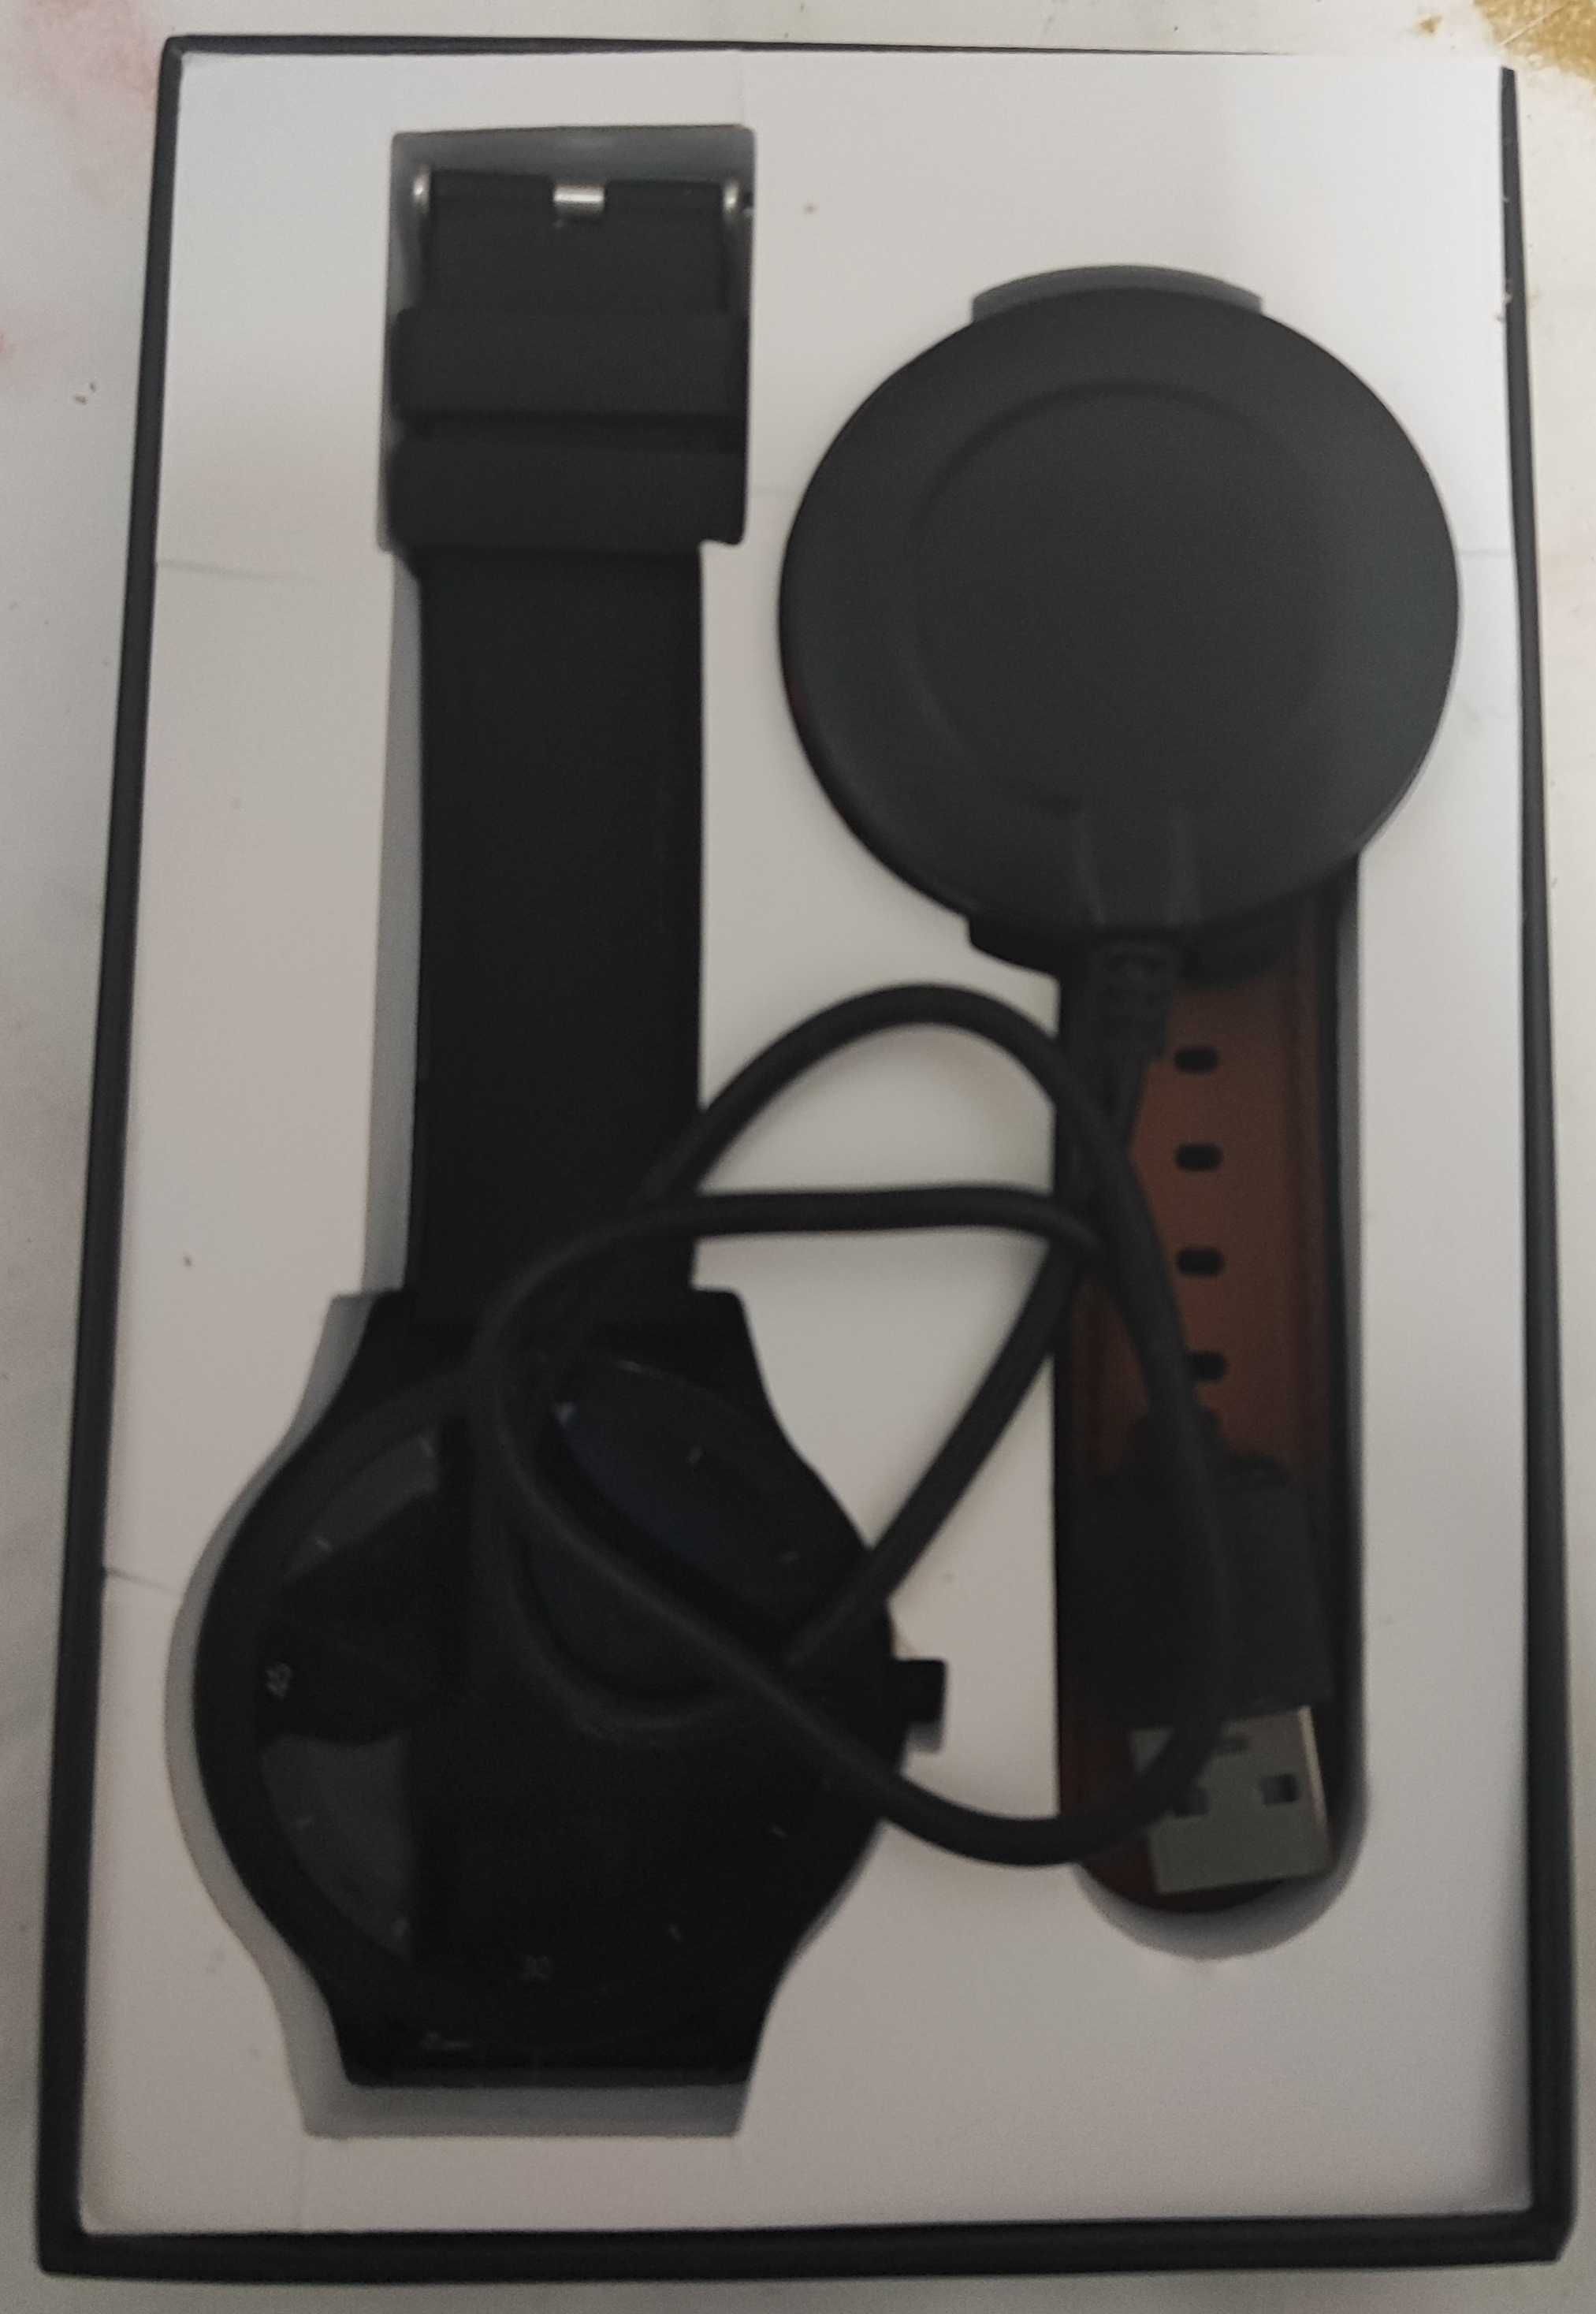 Smartwatch elegiant c530 usado